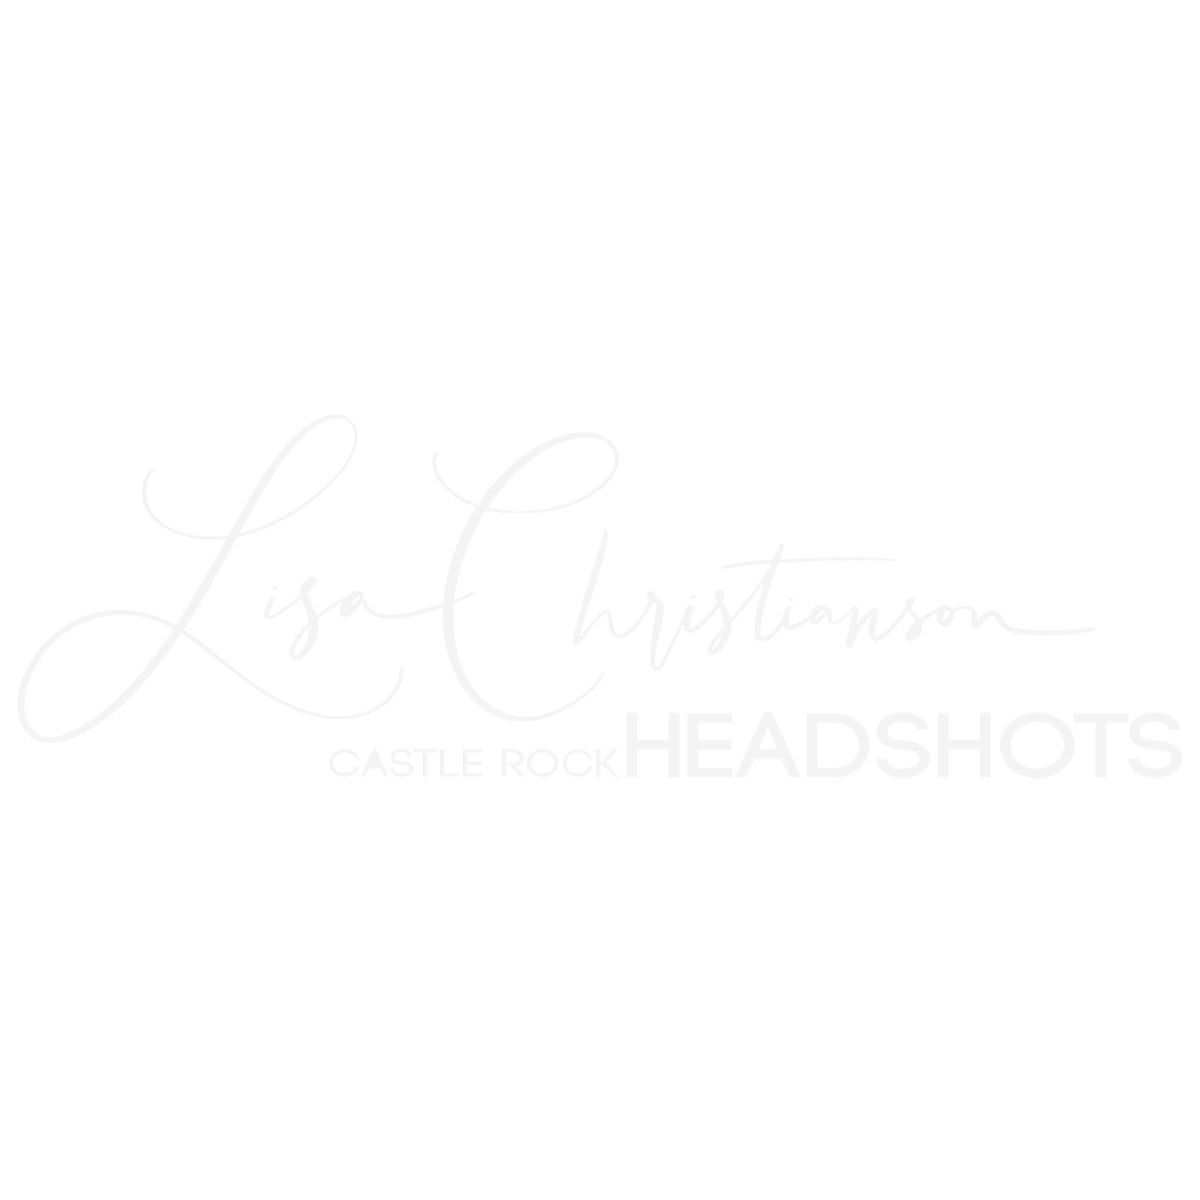 Castle Rock Headshots